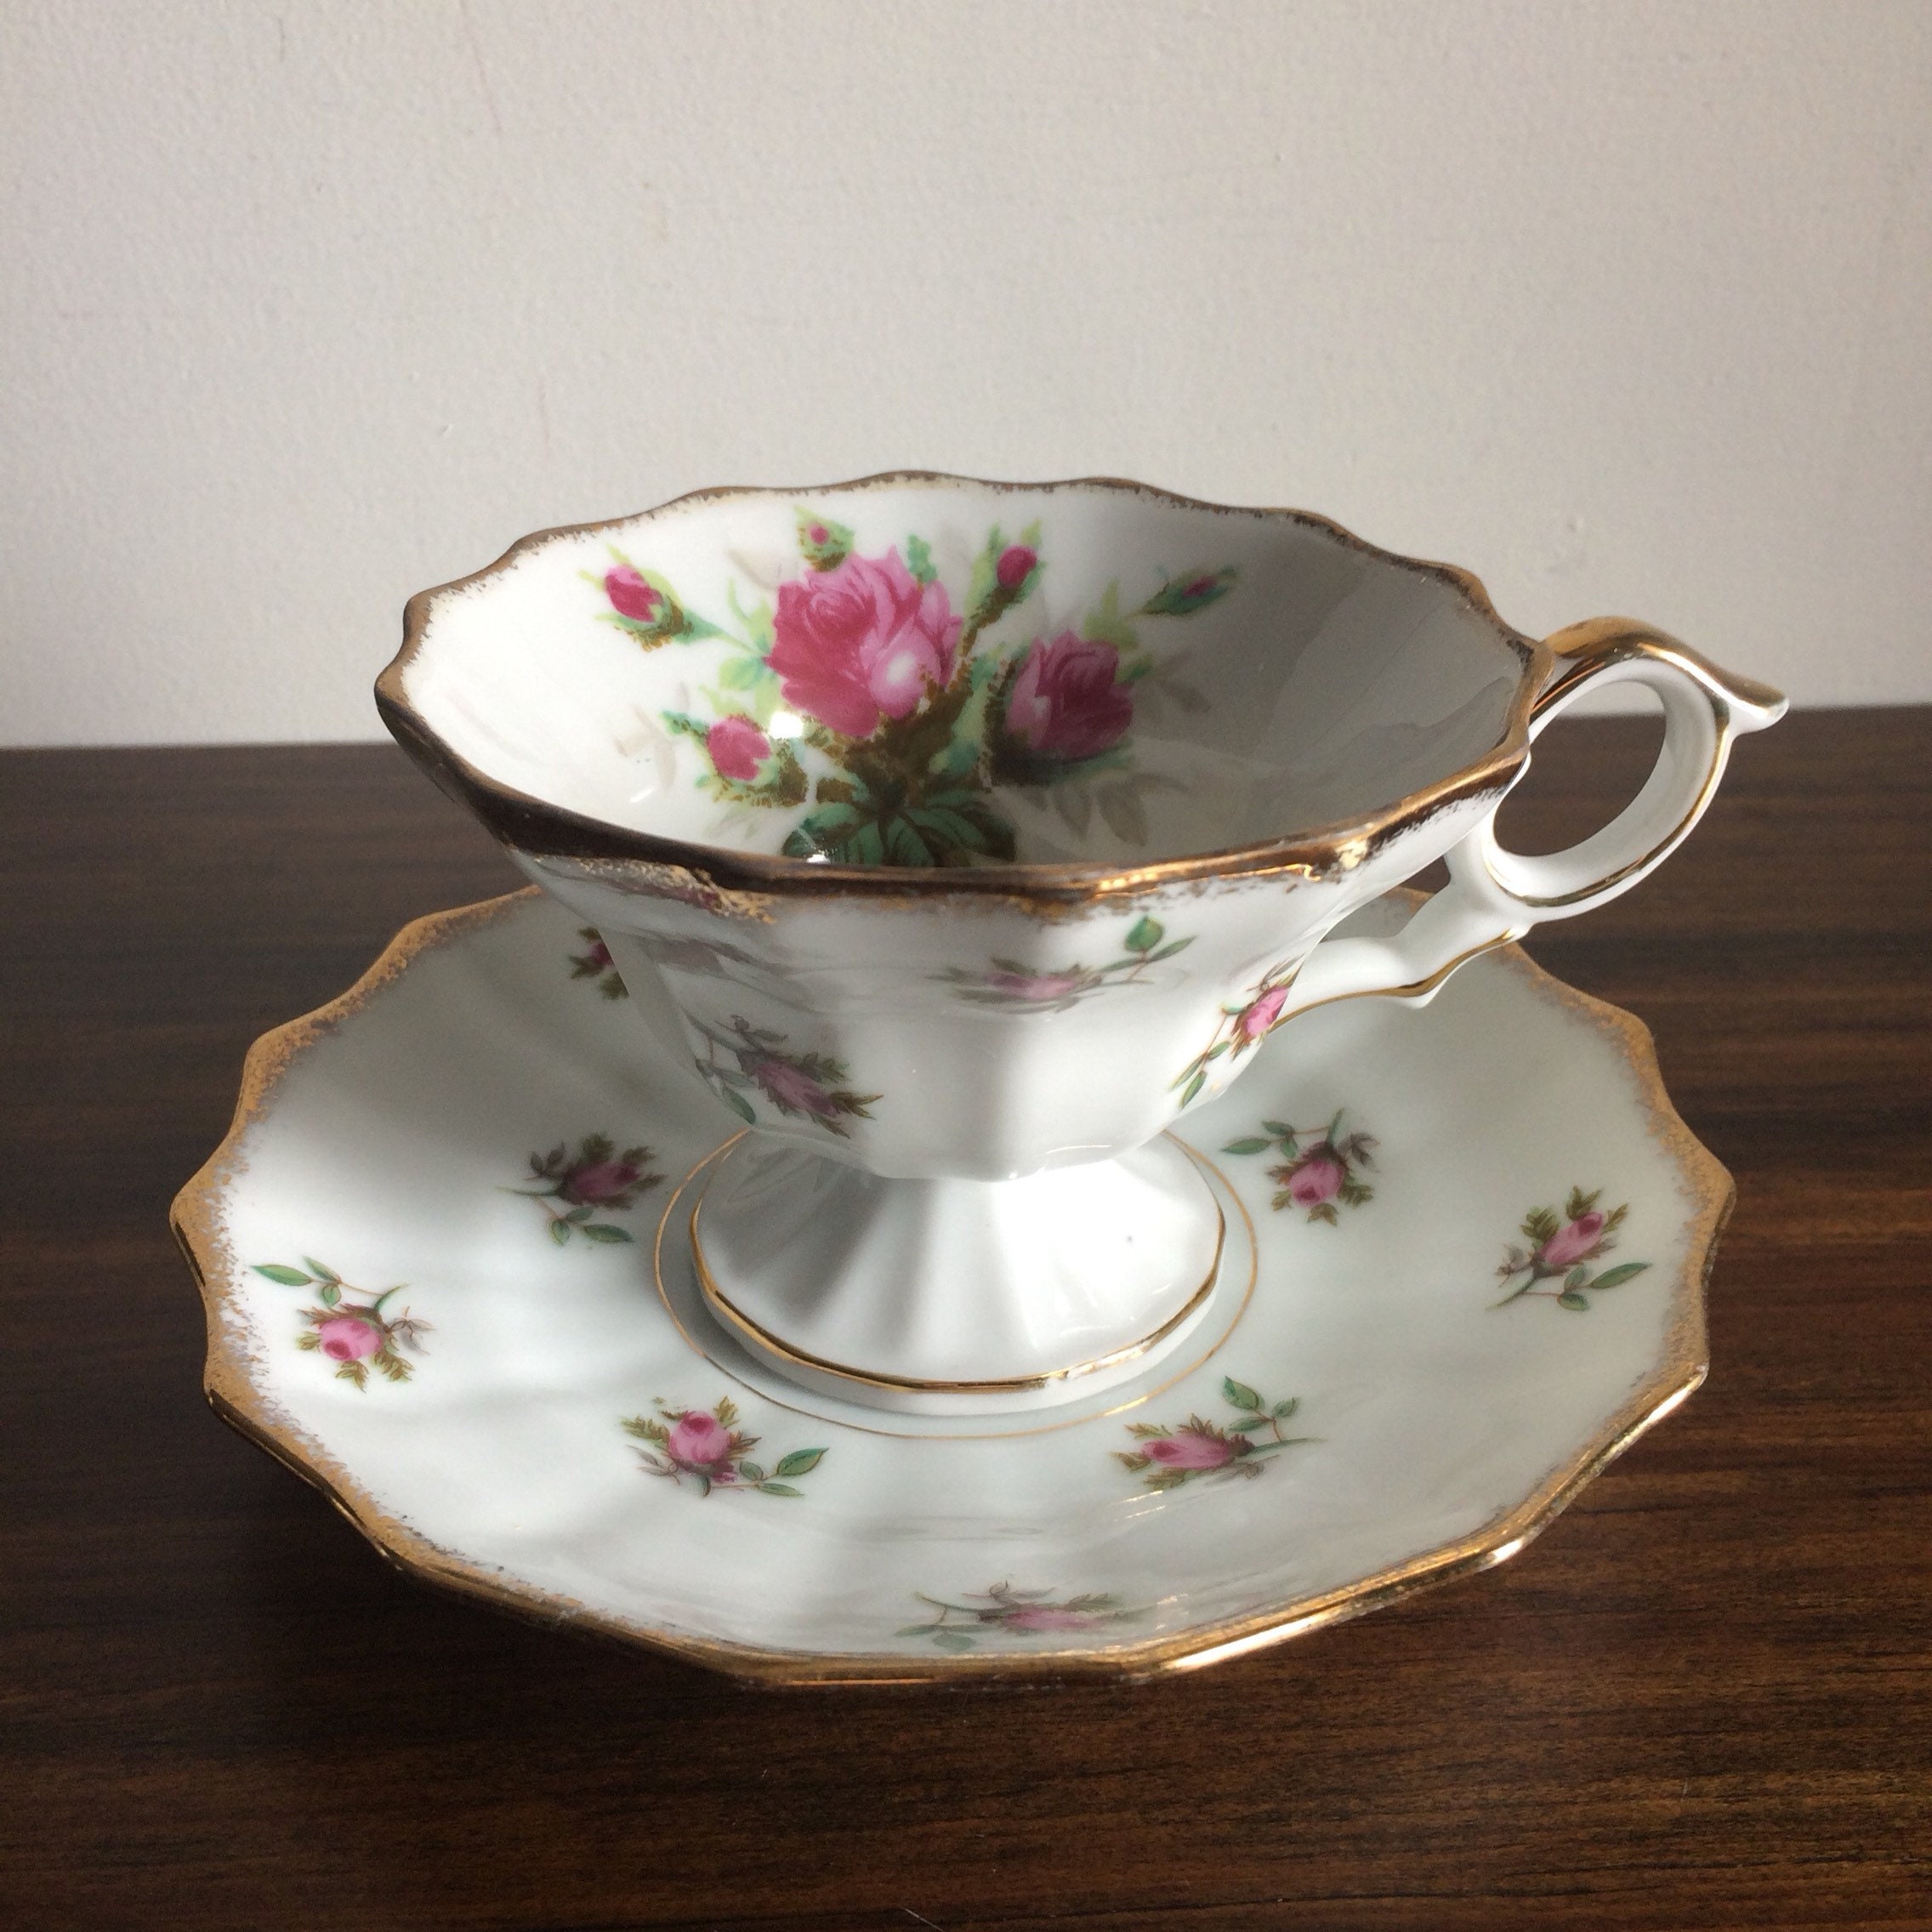 Vintage teacups